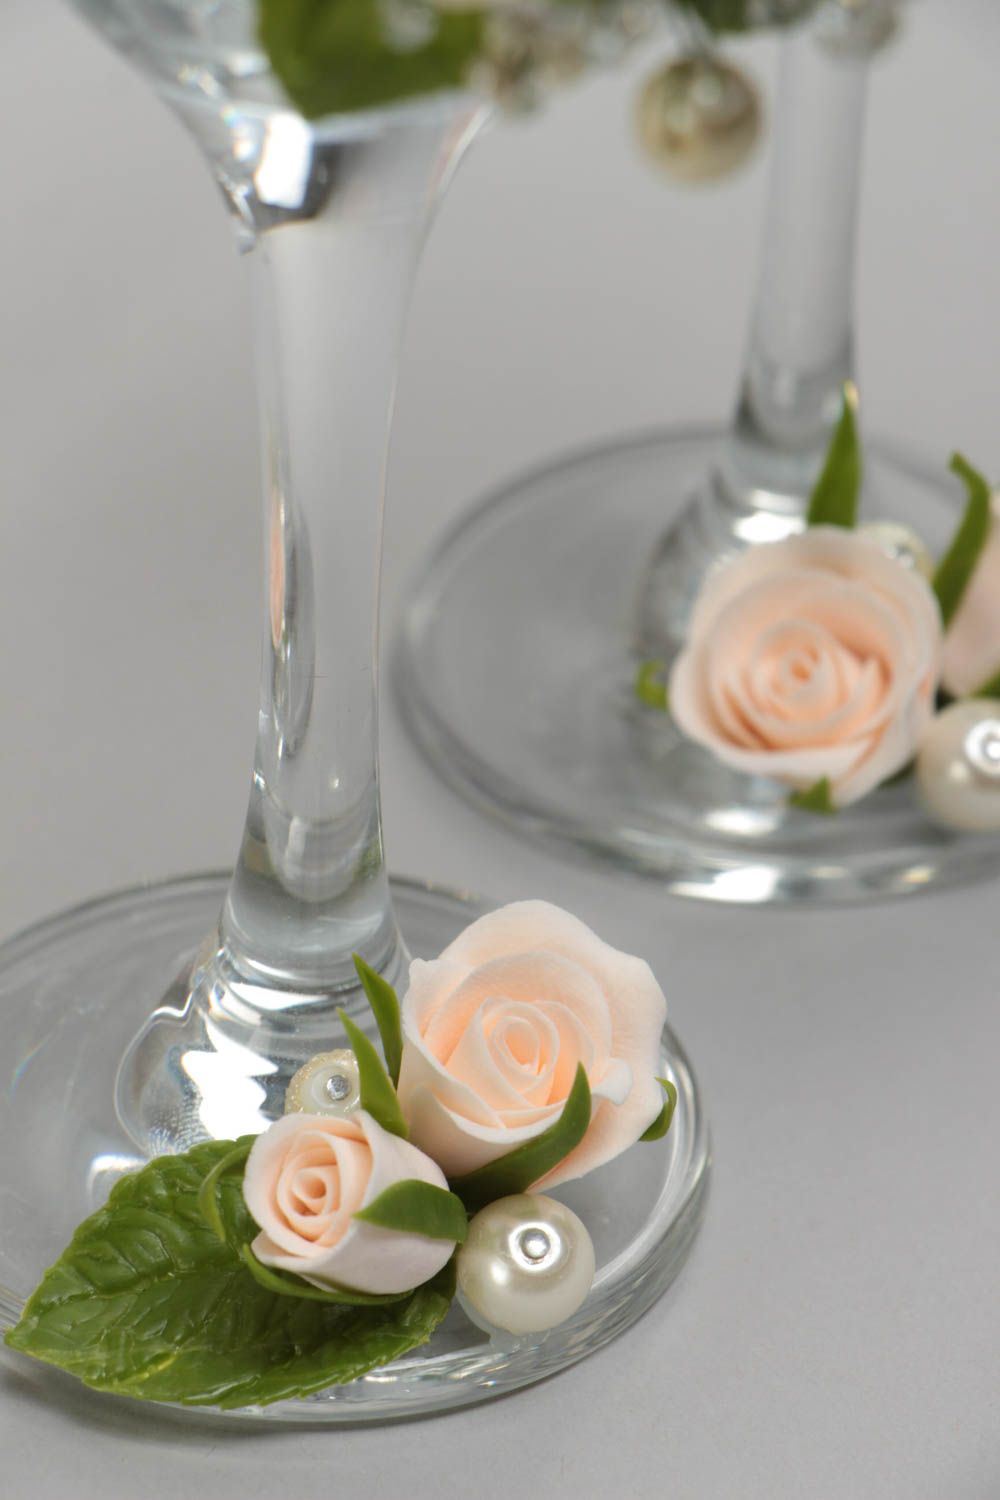 Schöne originelle Hochzeit Gläser mit Rosen Set 2 Stück handmade Künstlerarbeit foto 4